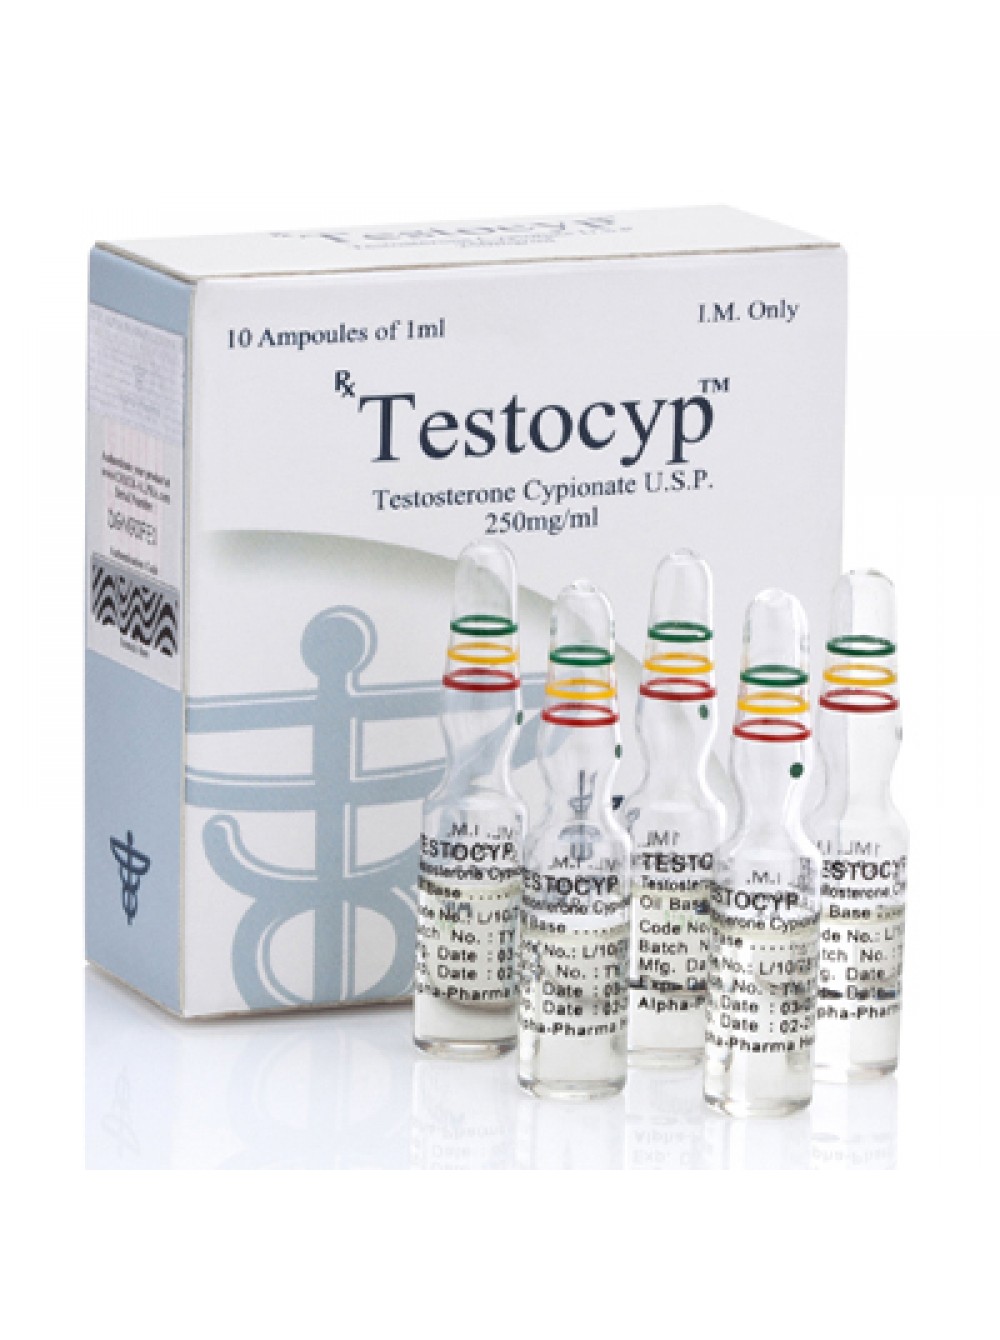 Testocyp vial (Testosterone Cypionate)